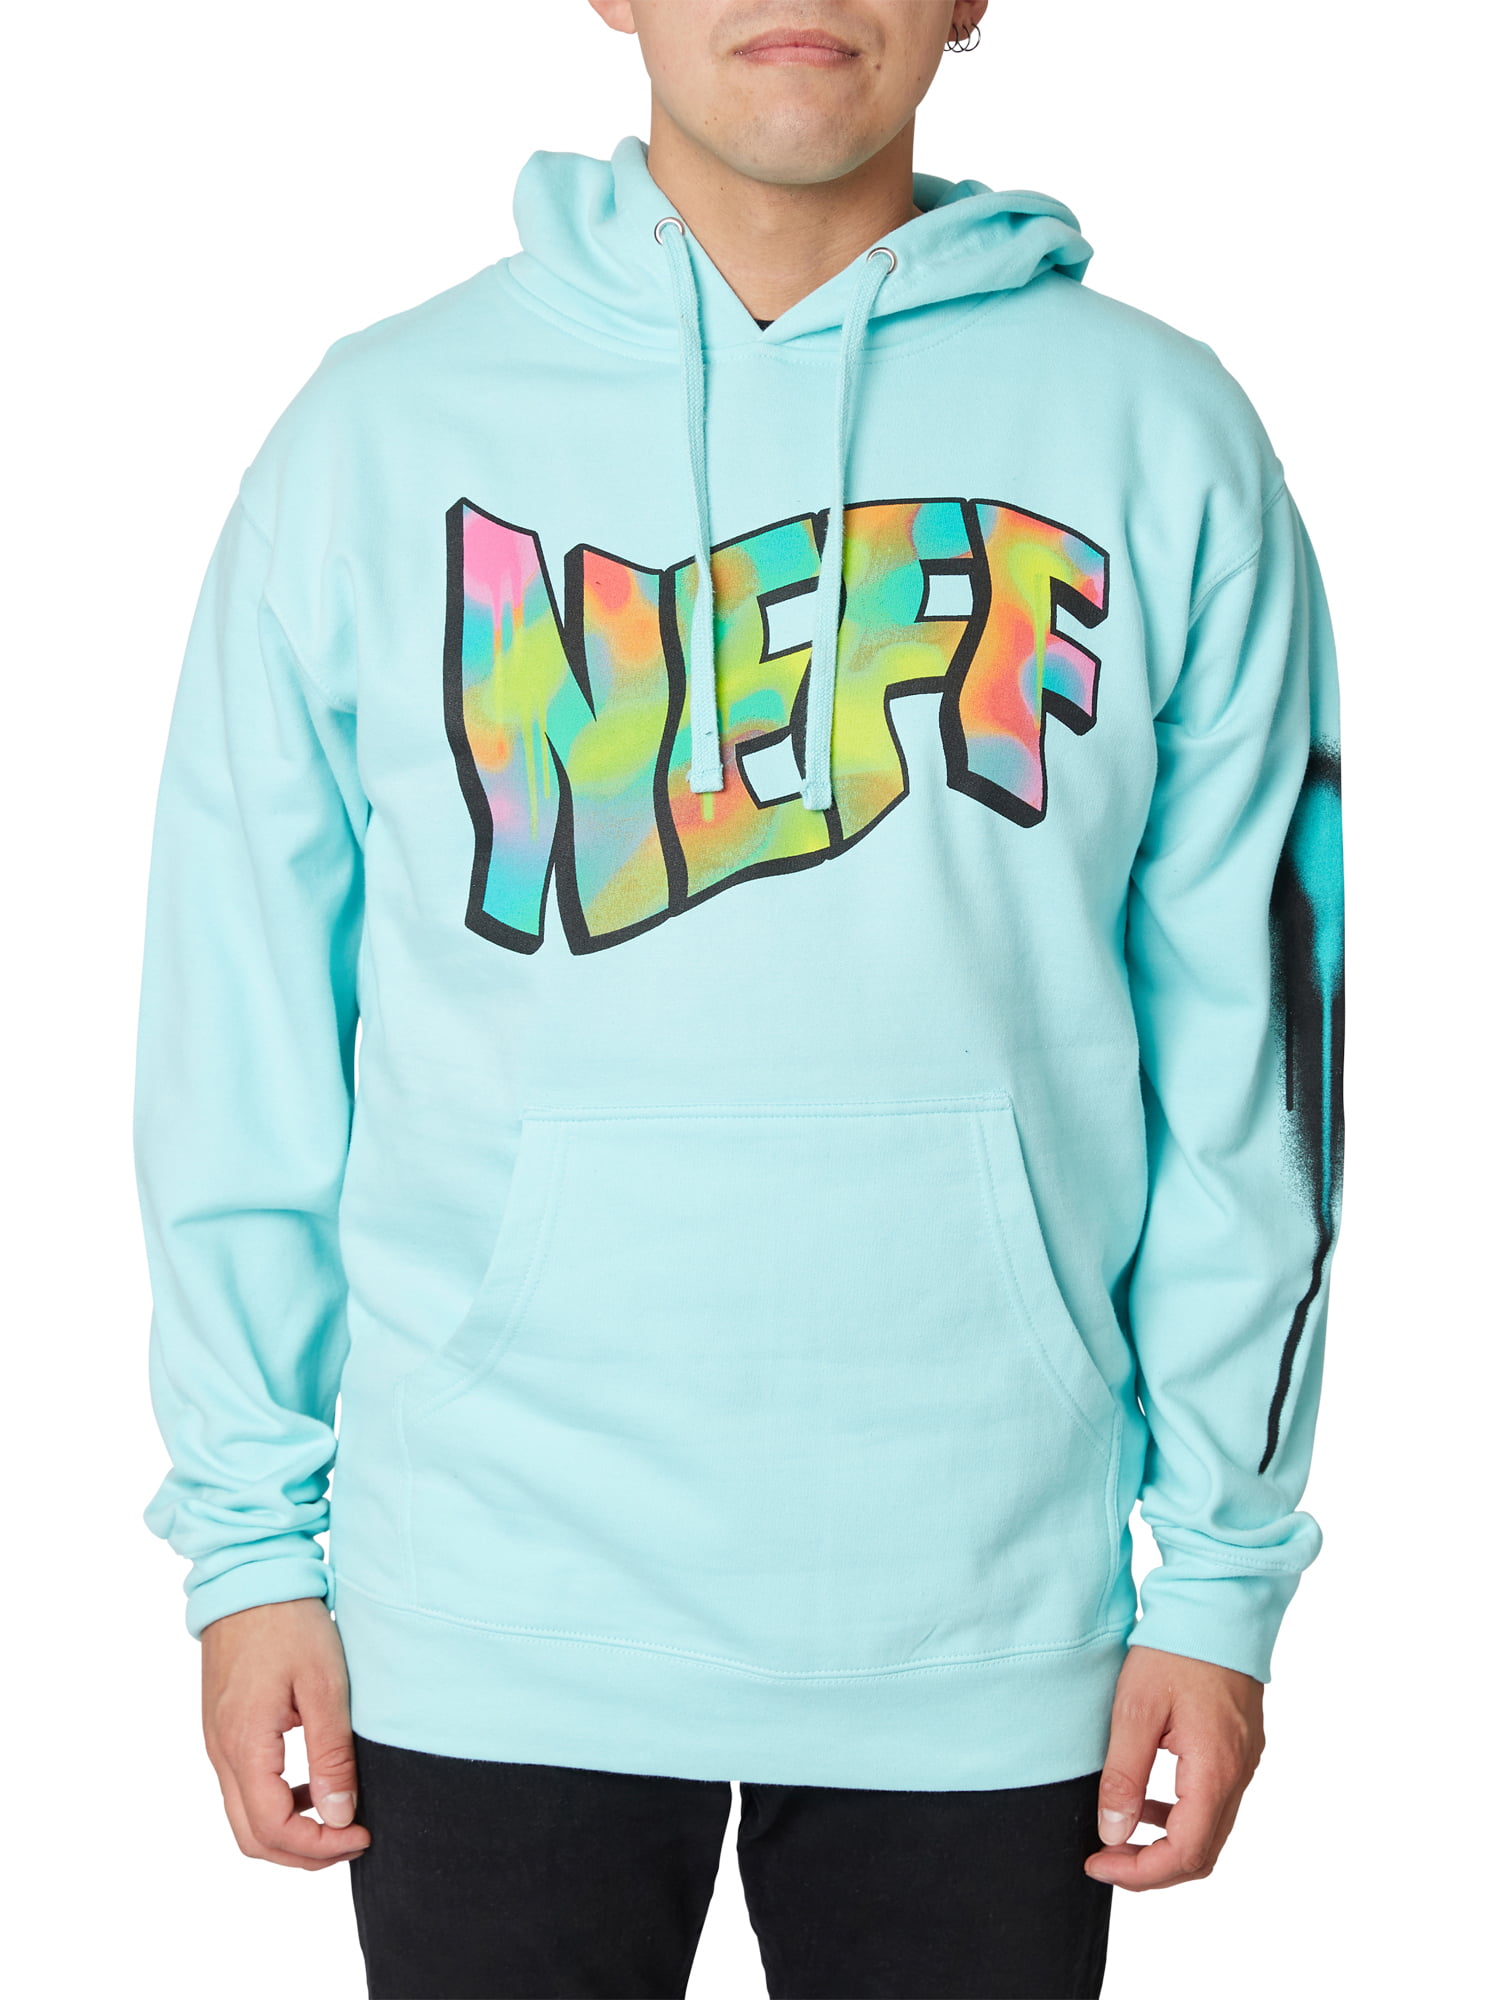 Hoodie Coople Sweatshirt Jumper for men Stranger Things Personality Sweater boy